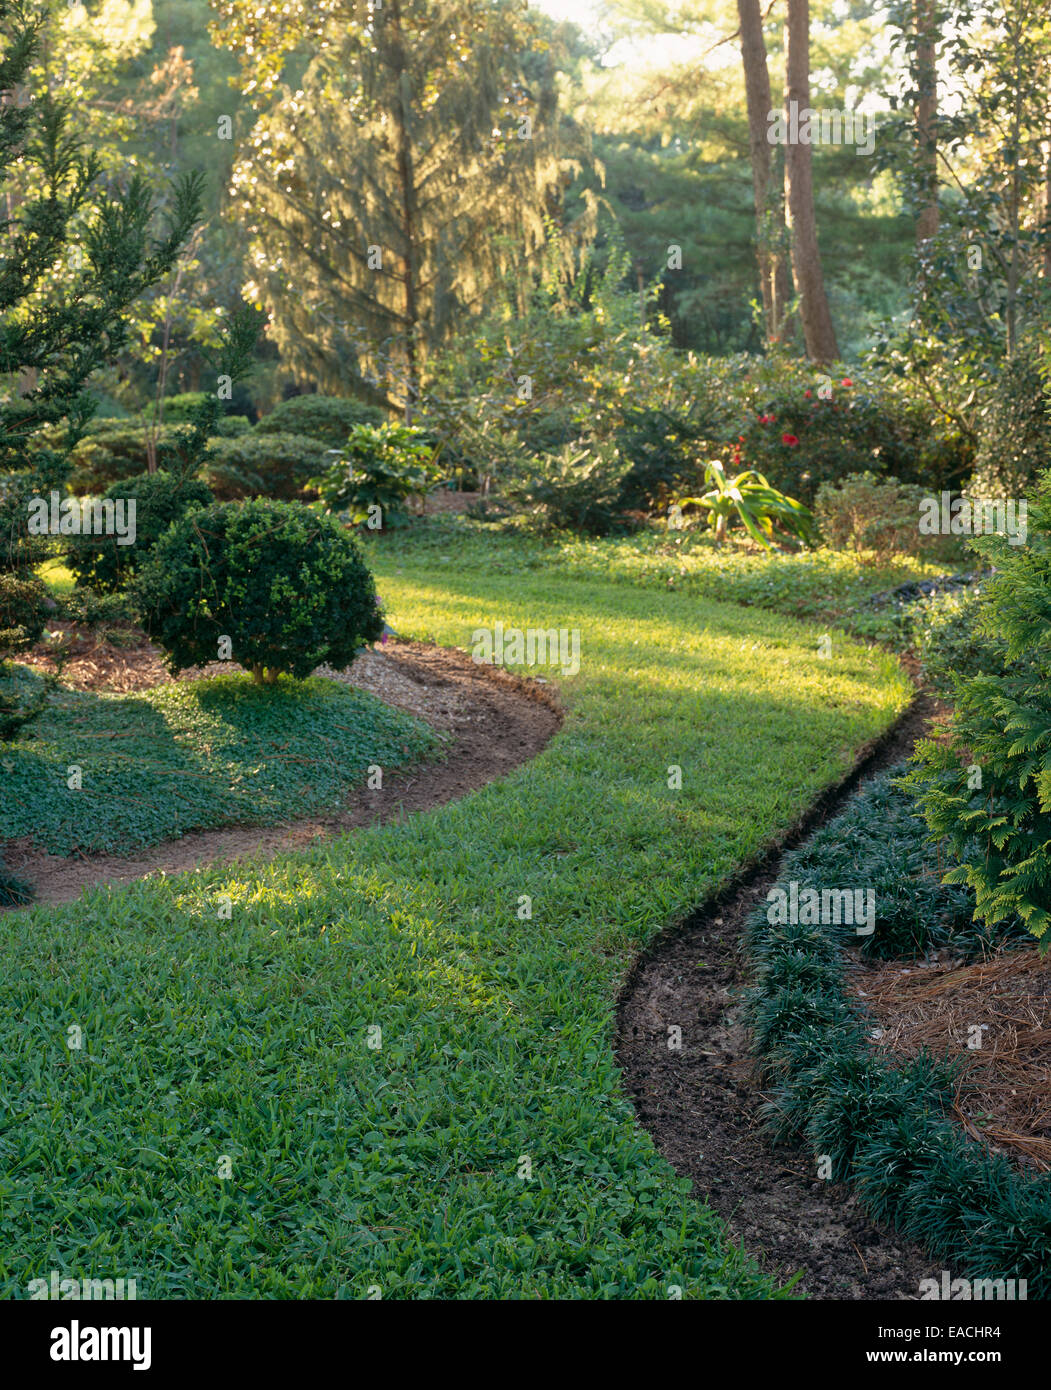 grass pathway in garden Stock Photo